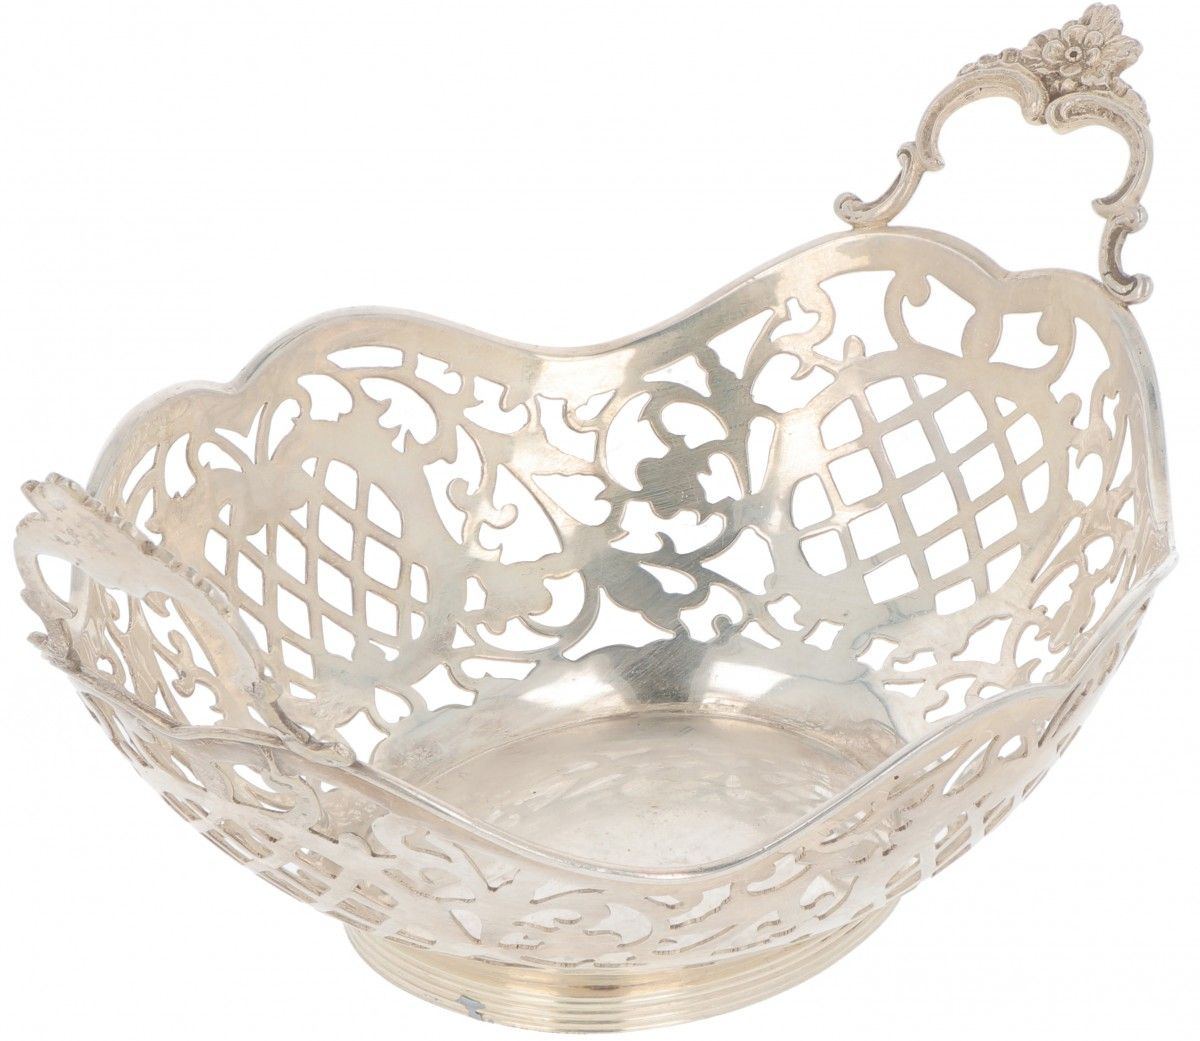 Bonbon basket silver-plated. Ovales Modell mit durchbrochenen Seiten, gelöteten &hellip;